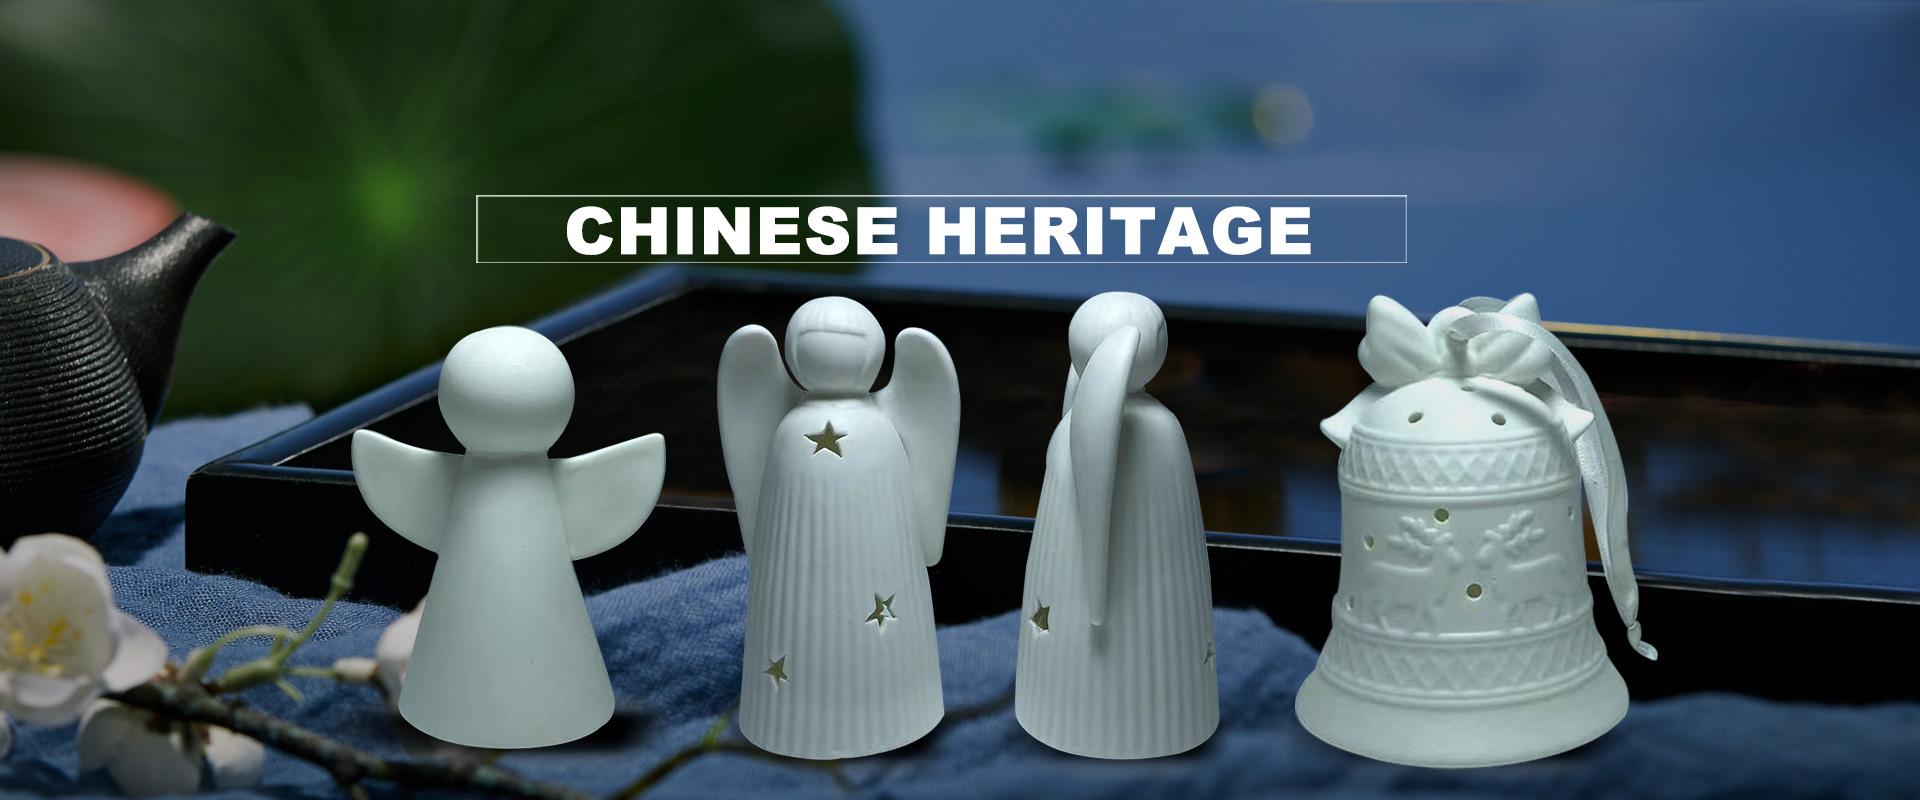 Héritage chinois